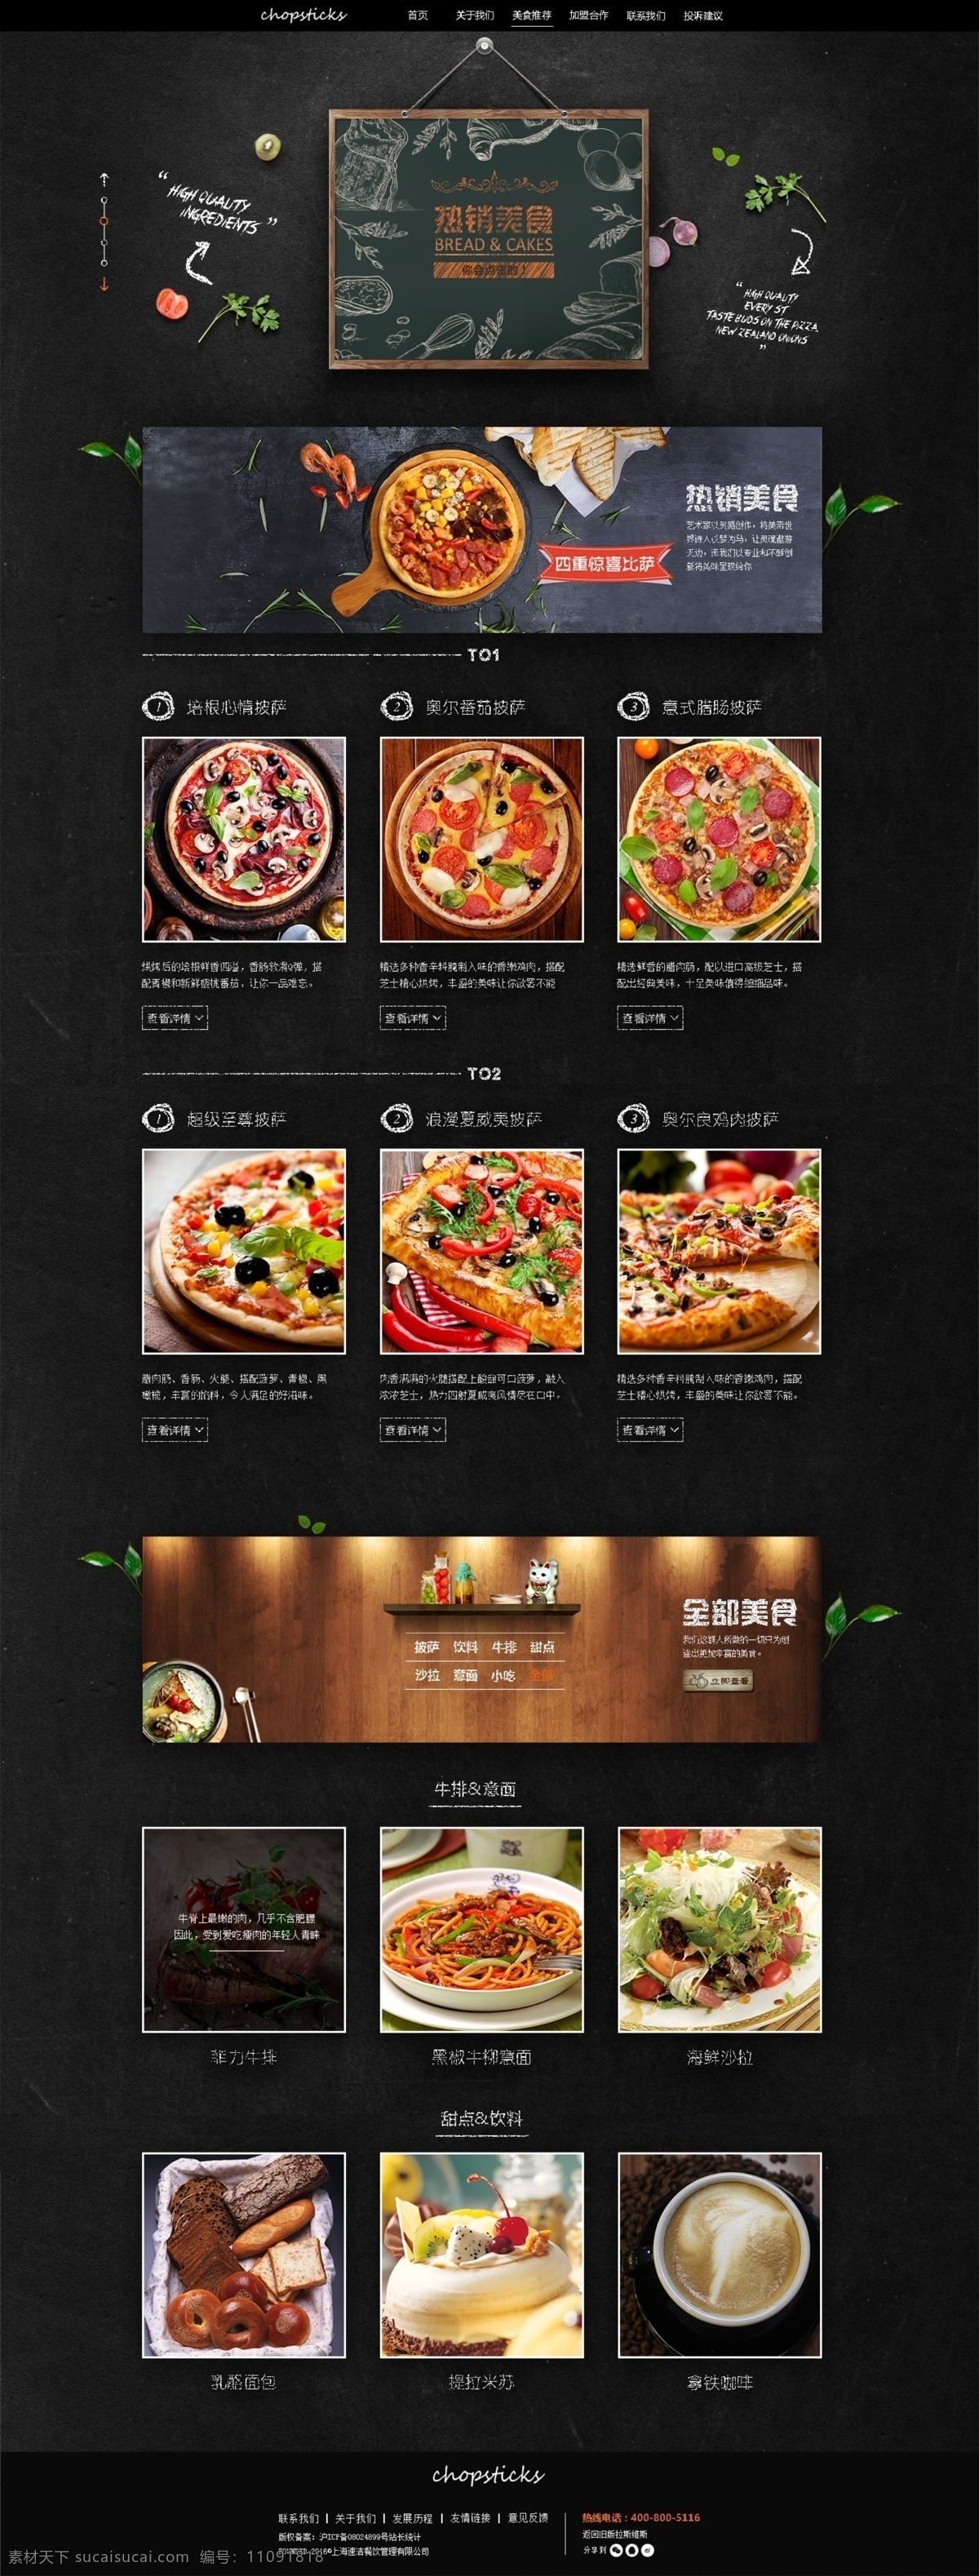 美食网站 美食网页 美食素材 披萨 美食网站界面 餐厅 海报 黑色 界面设计 美食 网页设计 免费 蛋糕 披萨海报